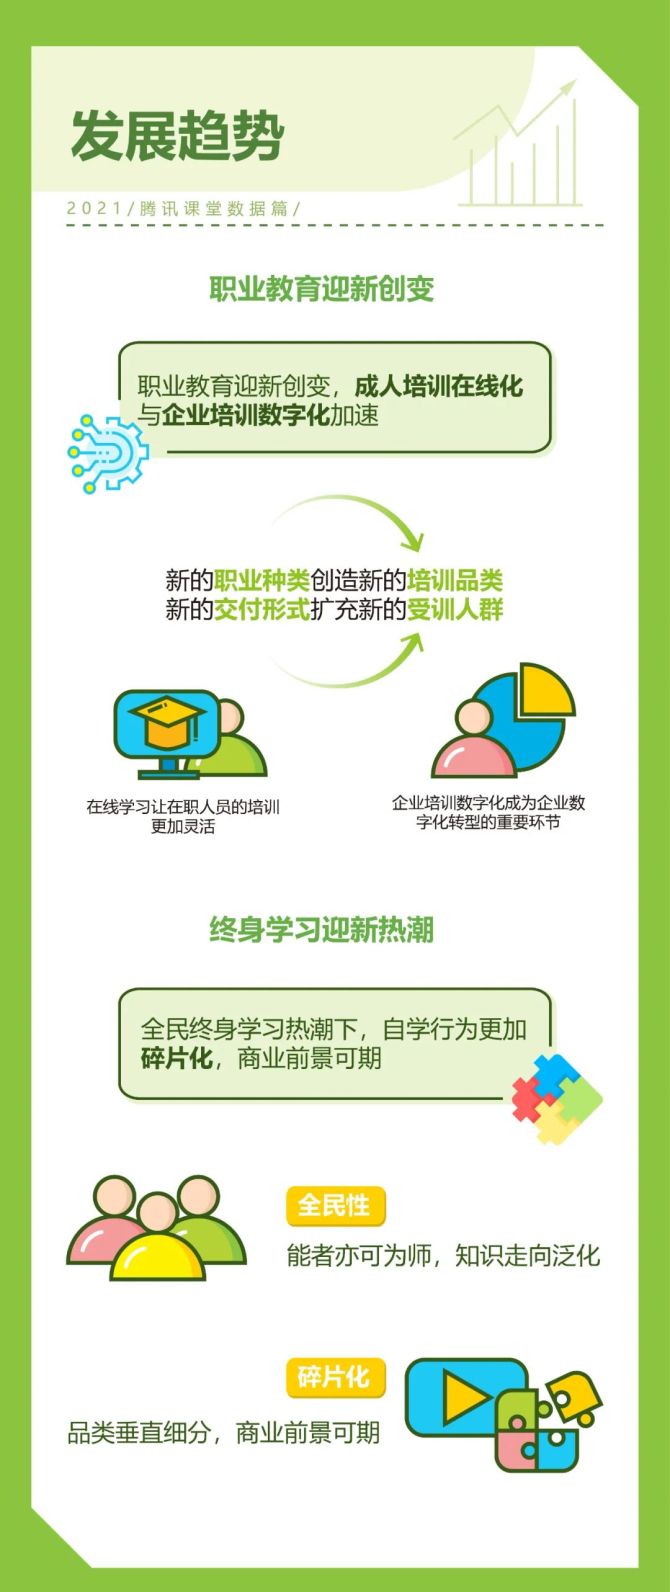 新知达人, 2022年中国综合性终身教育平台用户大数据报告—腾讯课堂数据篇